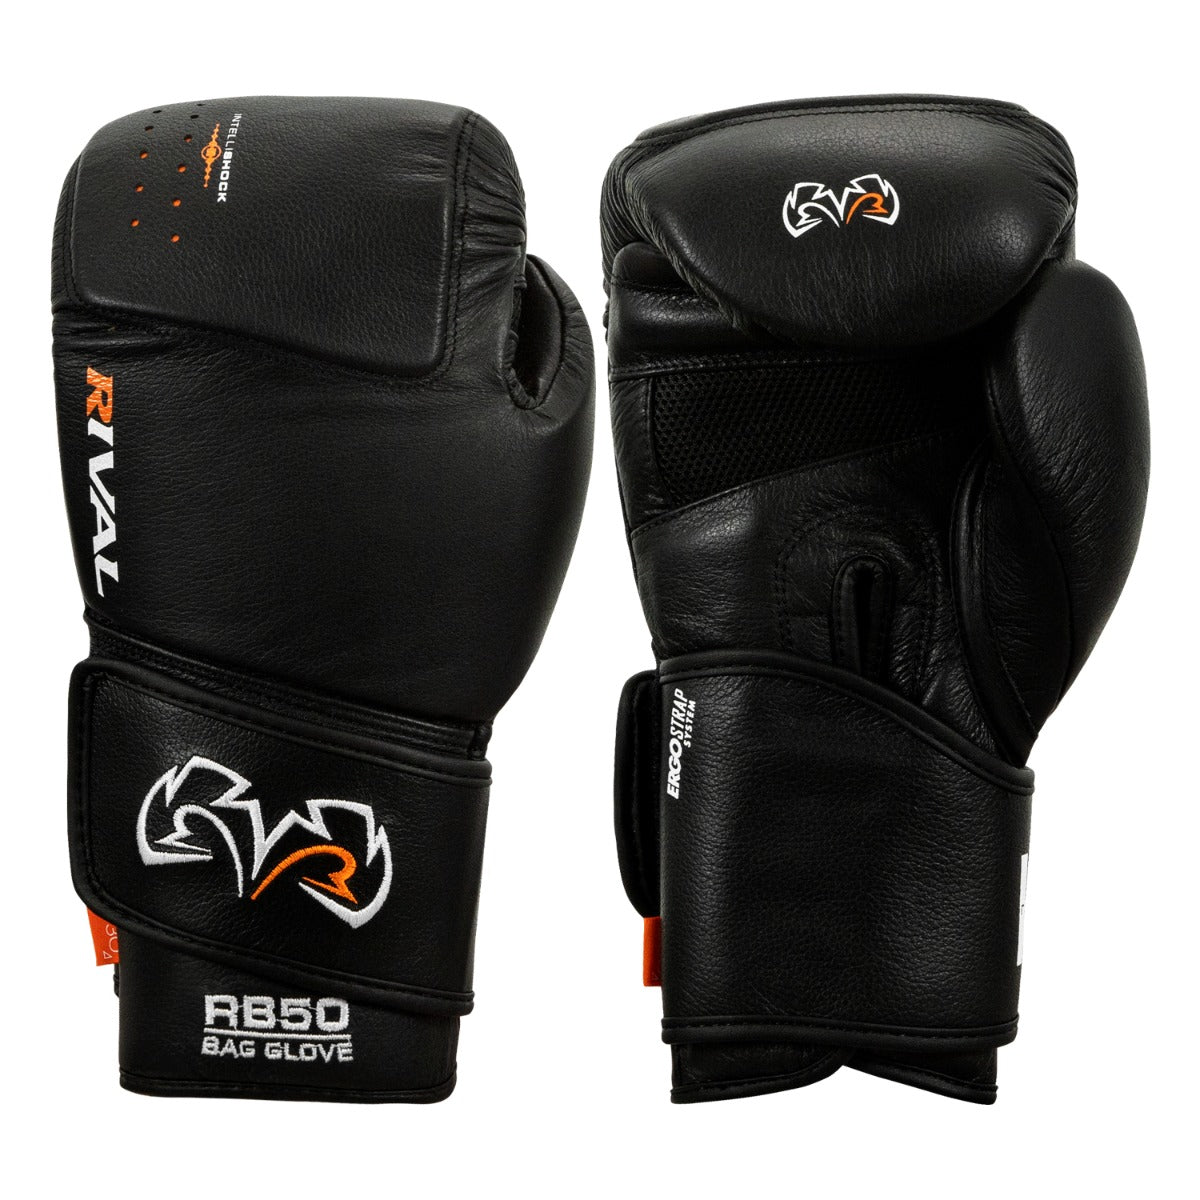 Rival Boxing Bag Guanti-RB50 Nero Intelli-SHOCK compatto 